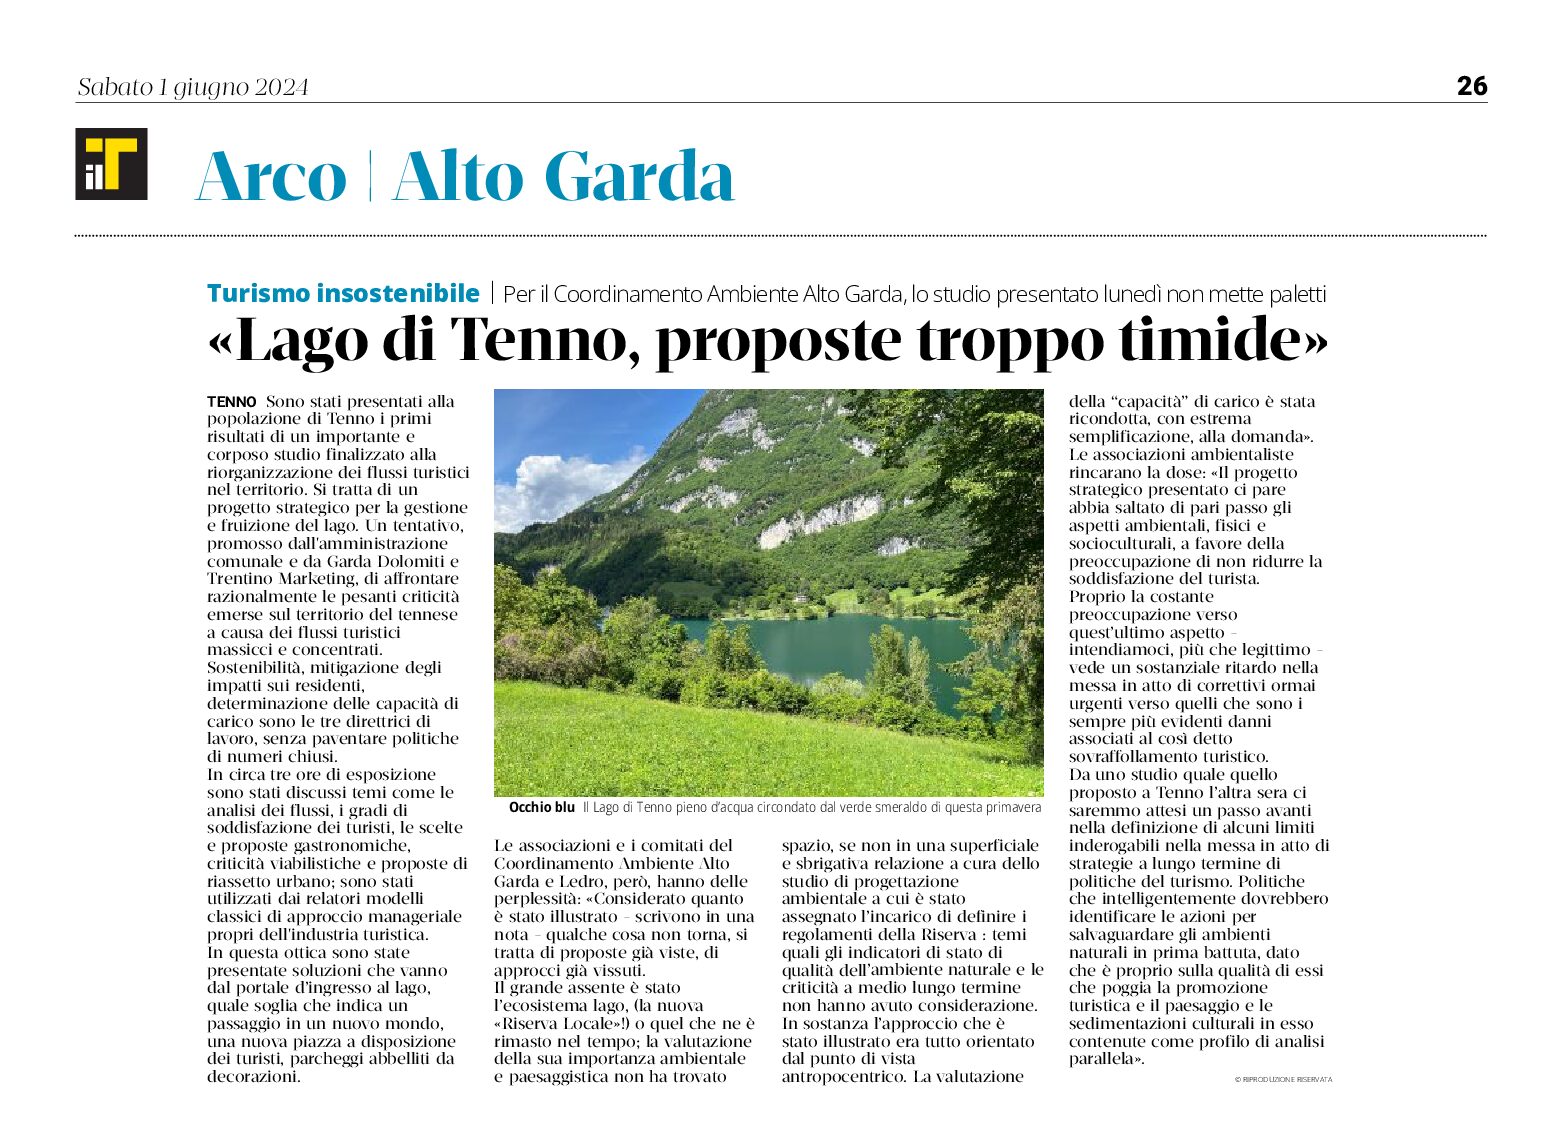 Lago di Tenno: turismo insostenibile e proposte troppo timide